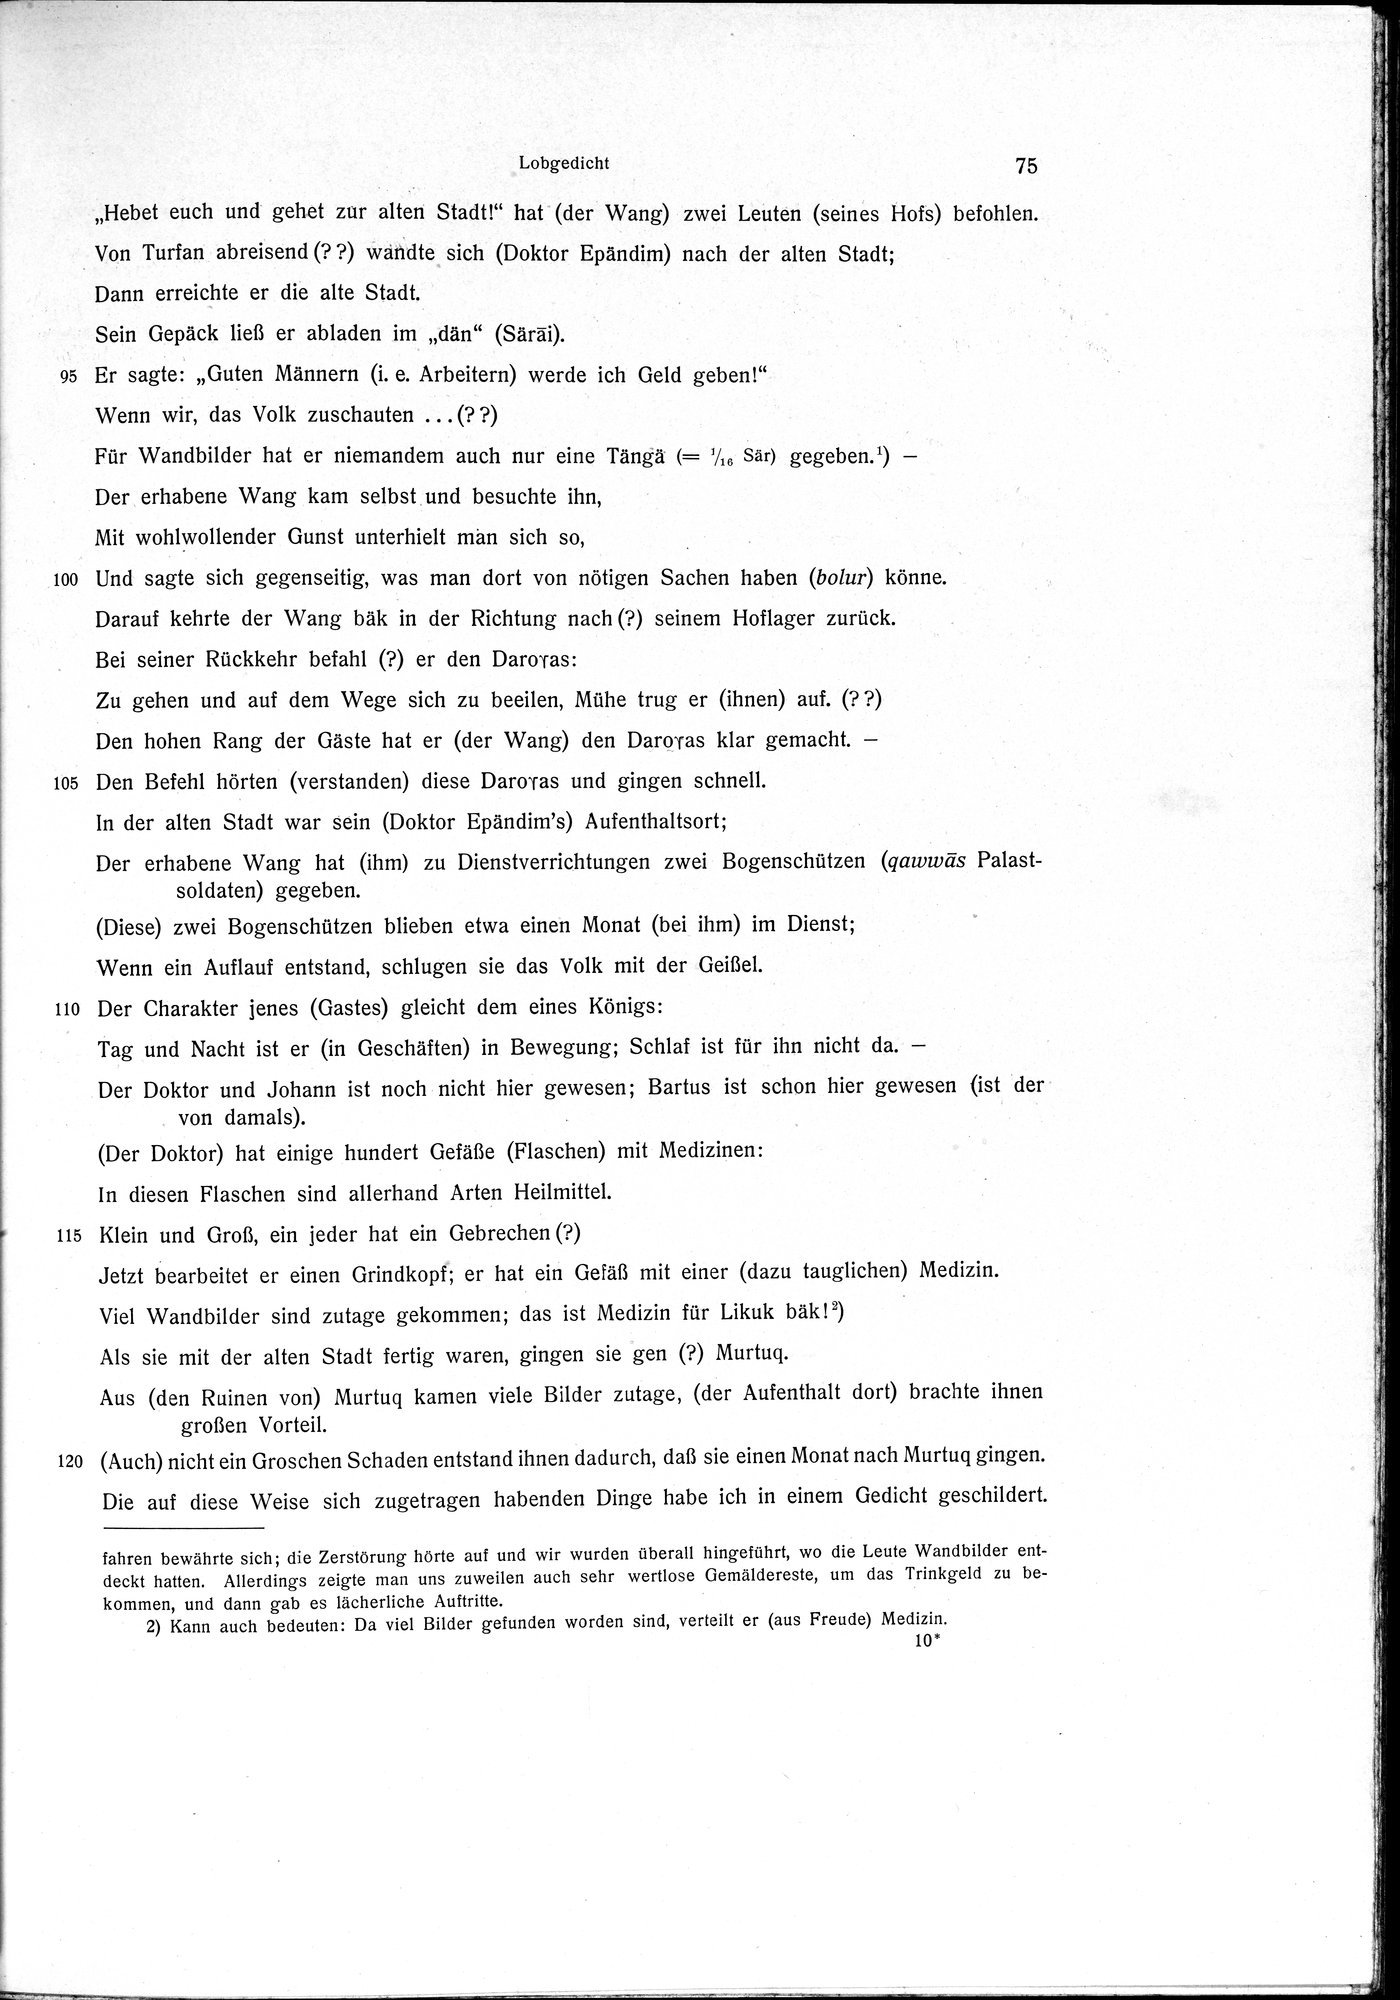 Sprichwörter und Lieder aus der Gegend von Turfan : vol.1 / Page 87 (Grayscale High Resolution Image)